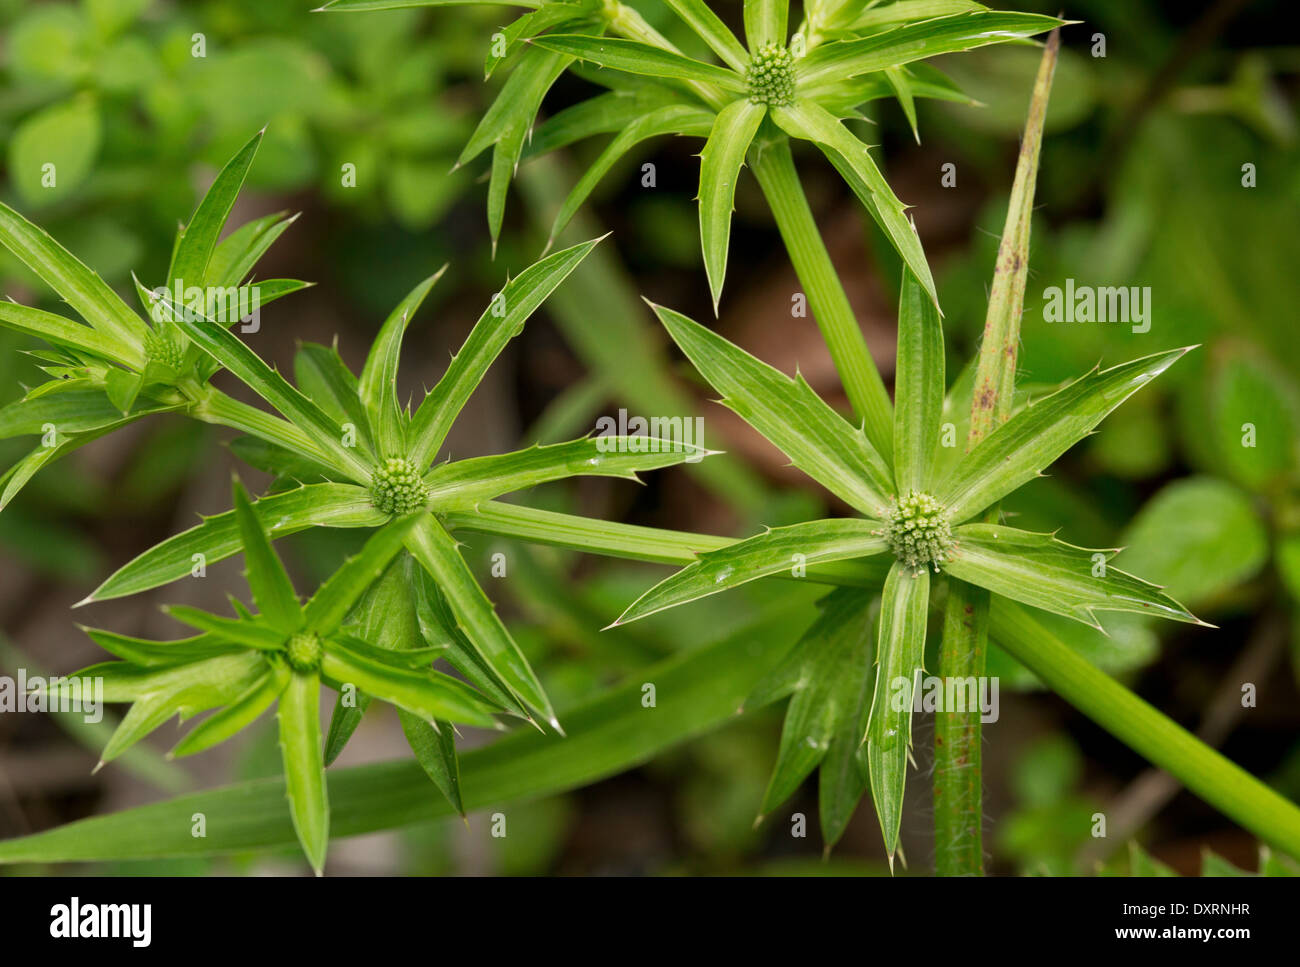 Schatten-Beni, Culantro oder mexikanischer Koriander, Eryngium Foetidum wachsen wild in Trinidad. Stockfoto